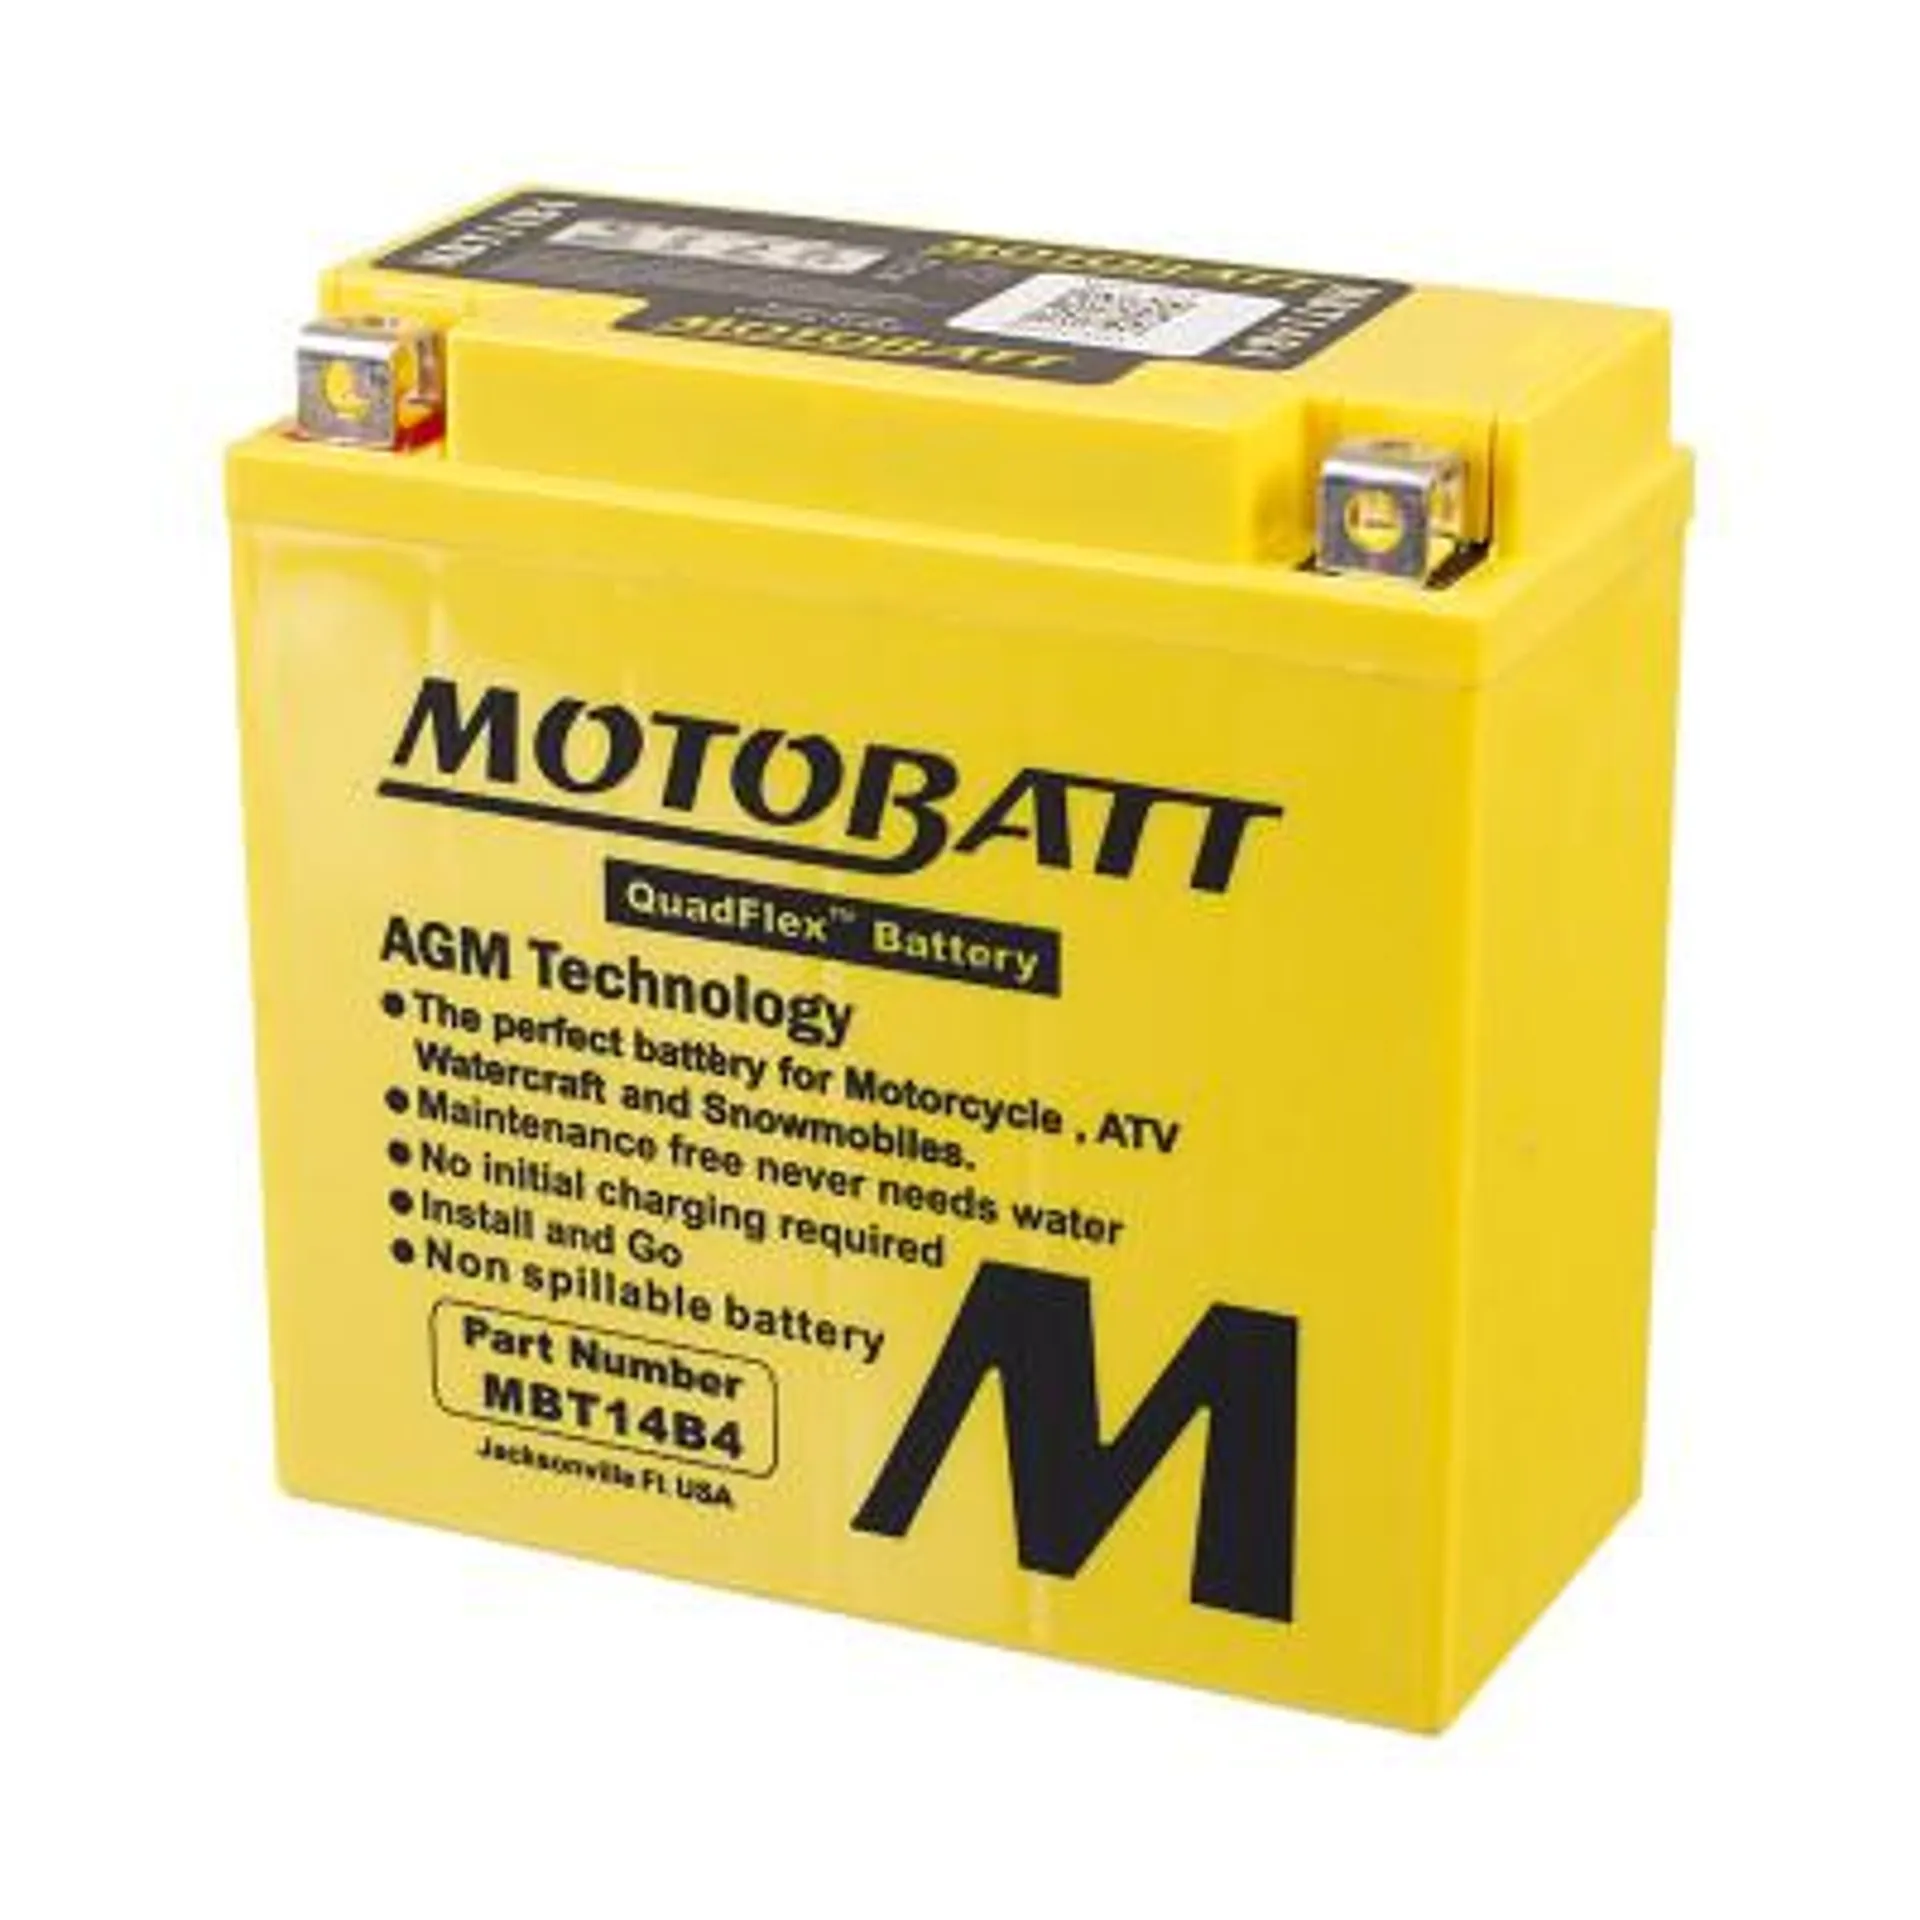 MBT14B-4 12V Motobatt Battery